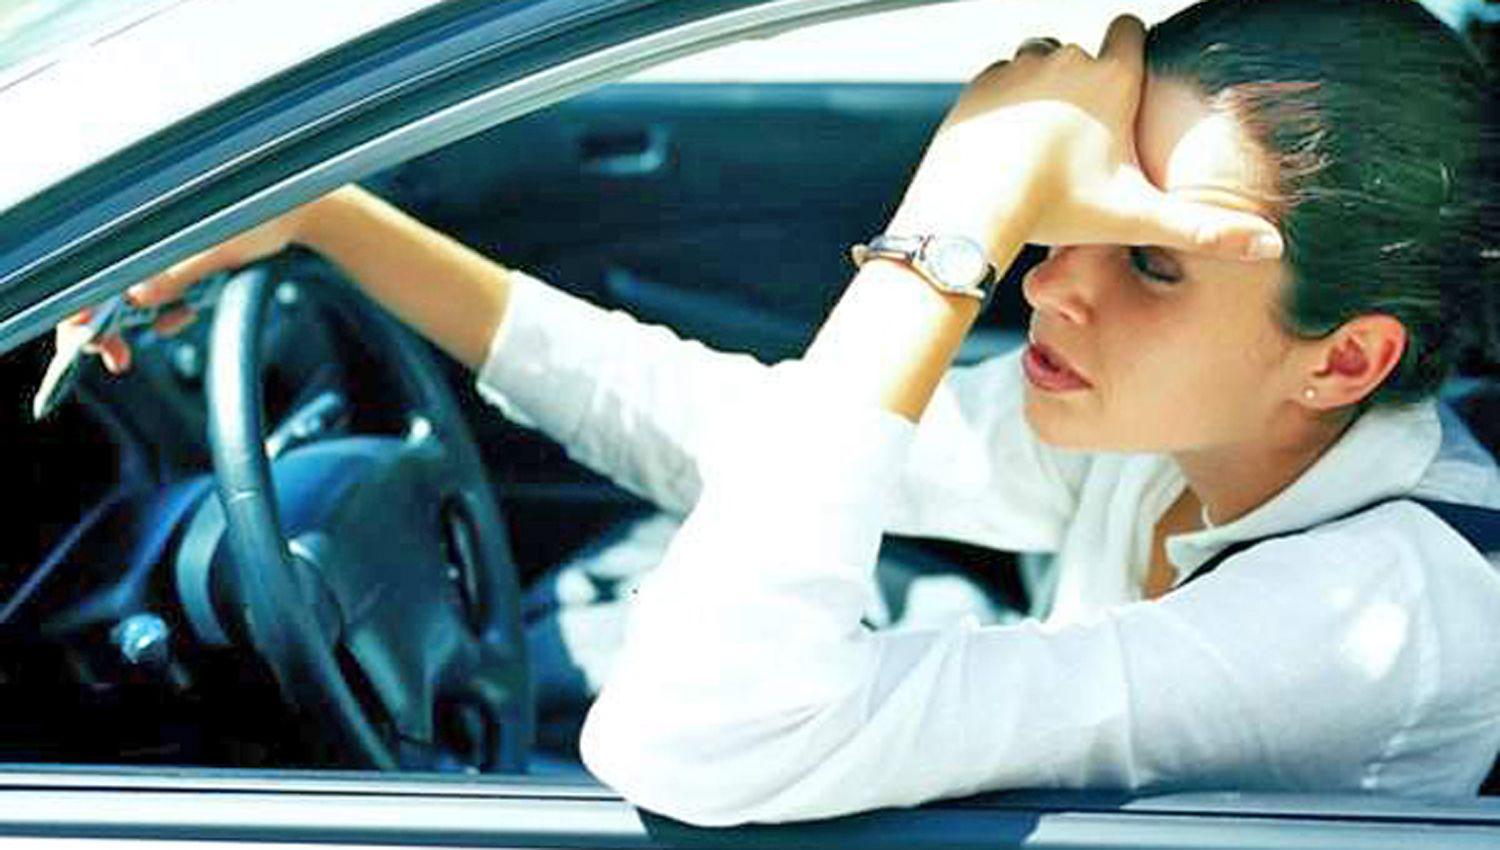 Conducir es una acción compleja que involucra al conductor
psicológica y físicamente